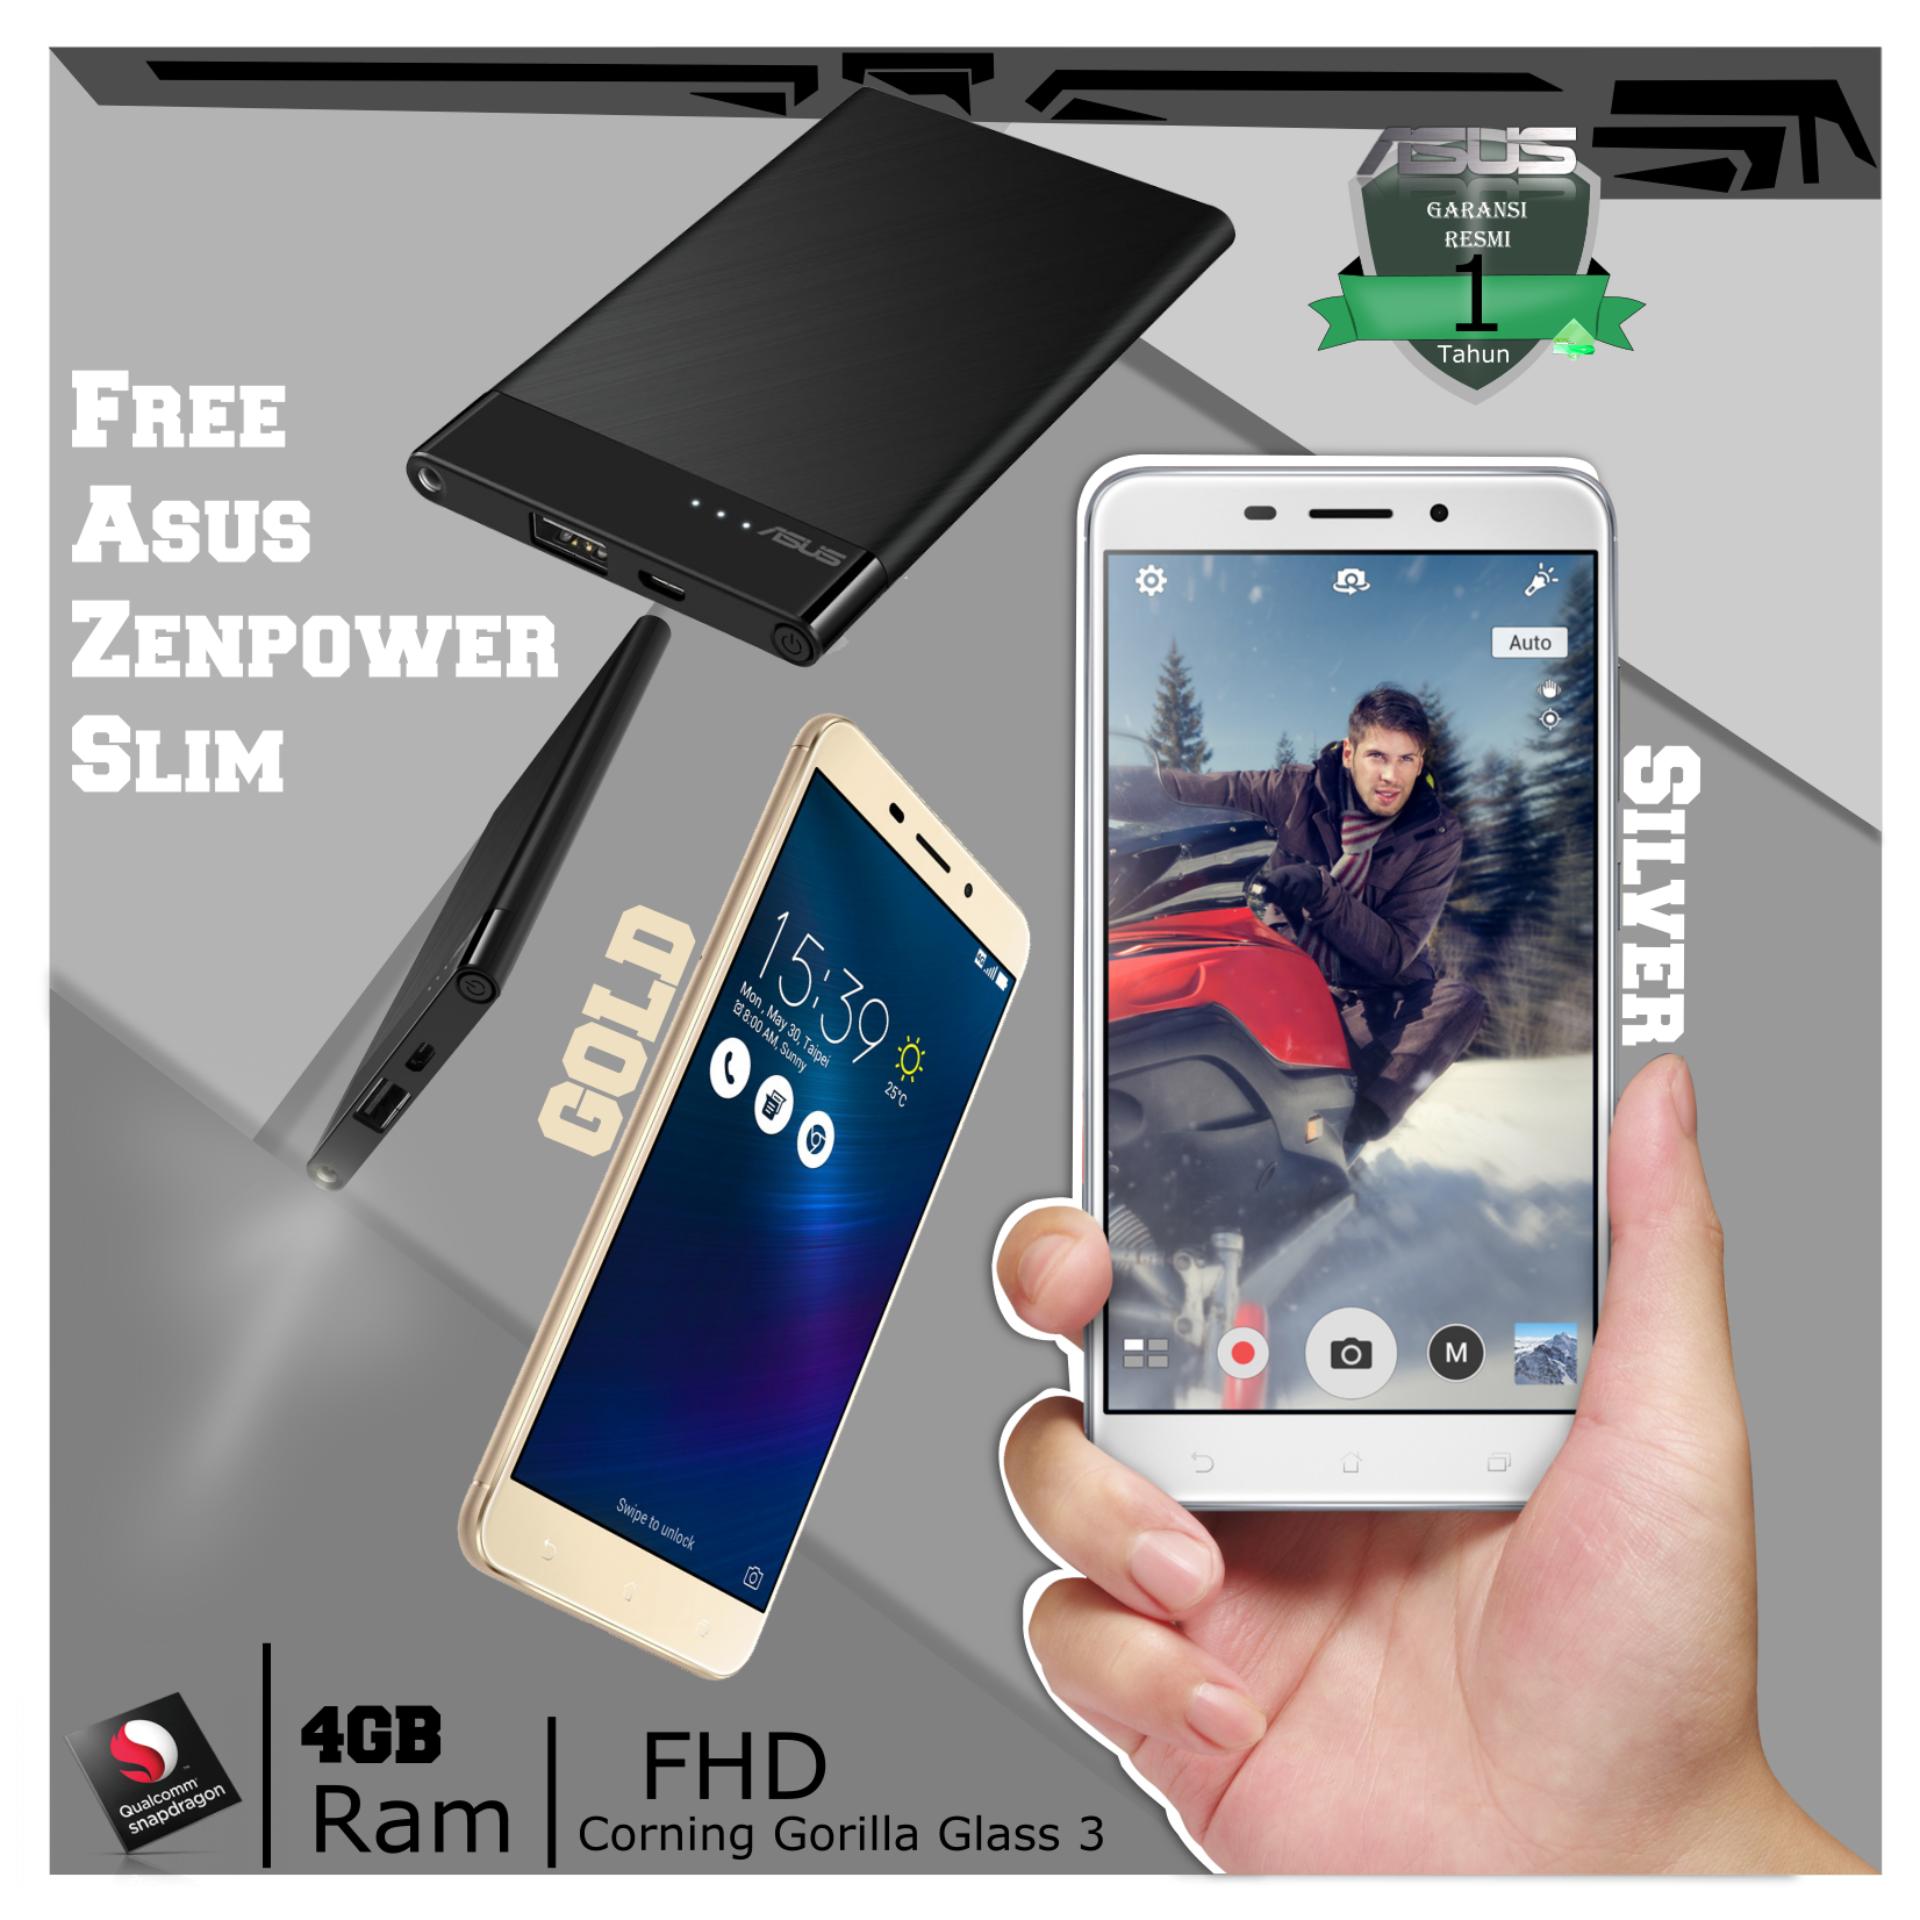 Asus Zenfone 3 Laser ZC551KL 5.5'' 4G 4/32 13MP Fingerprint + Free Asus Zenpower Slim